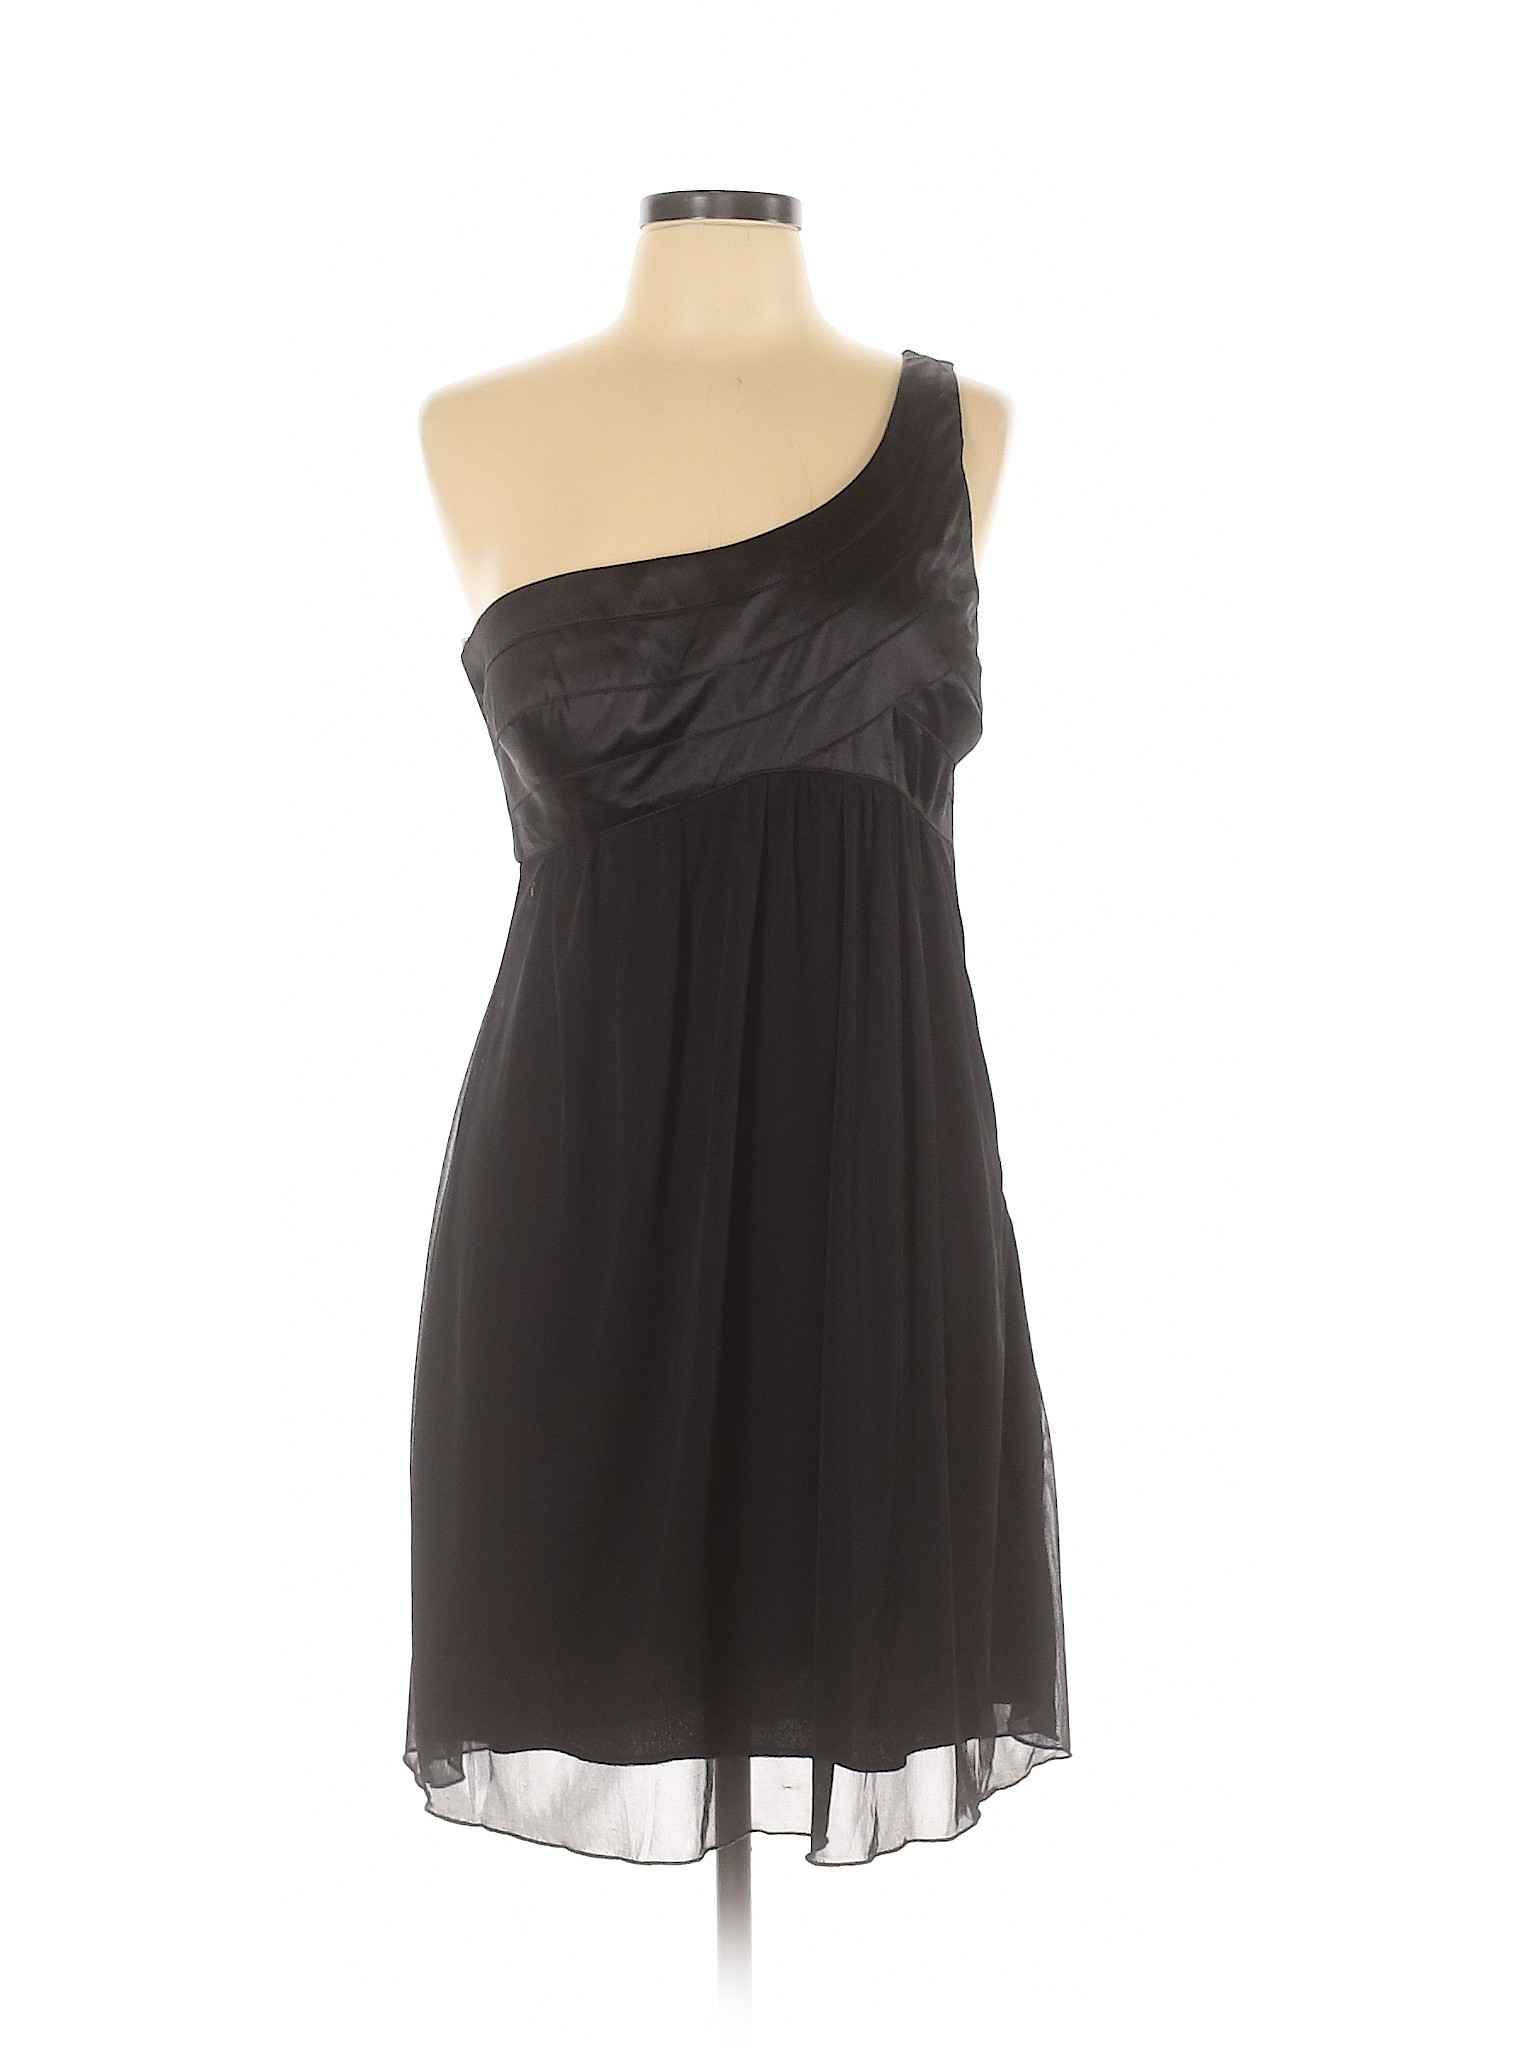 Trixxi Women Black Cocktail Dress 11 | eBay